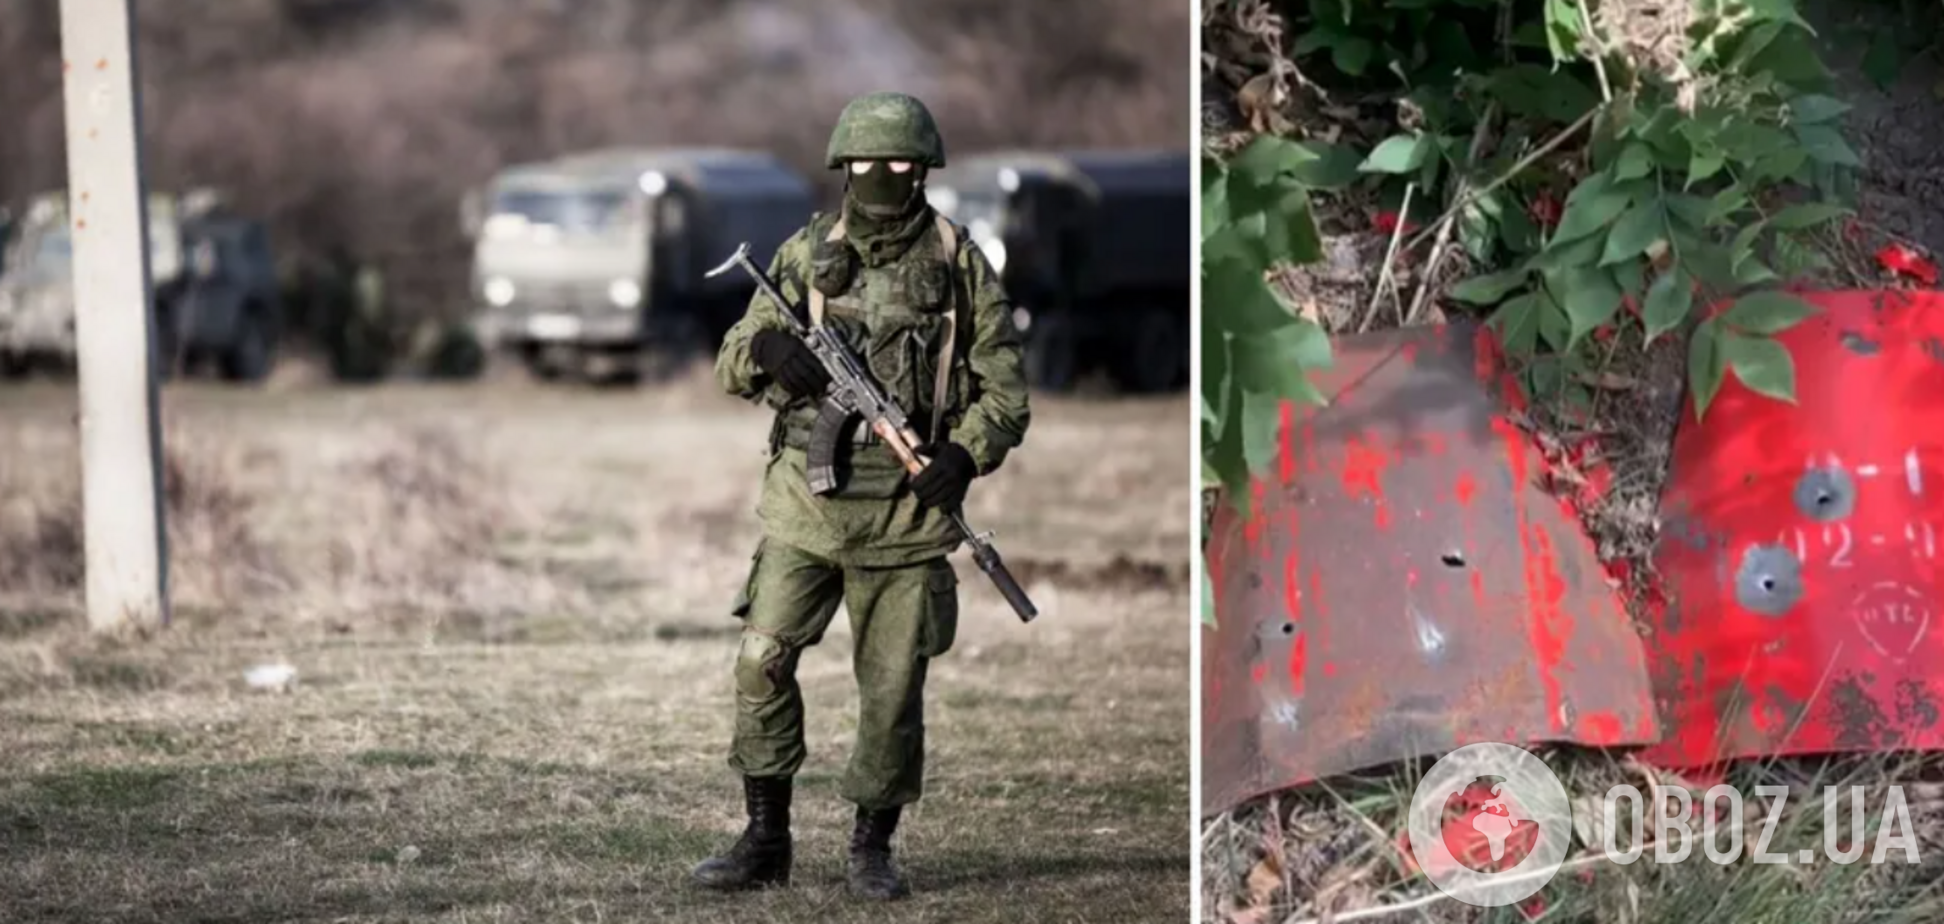 'Вторая армия мира' использует пожарные щиты вместо бронежилетов: украинские защитники показали интересный трофей. Видео